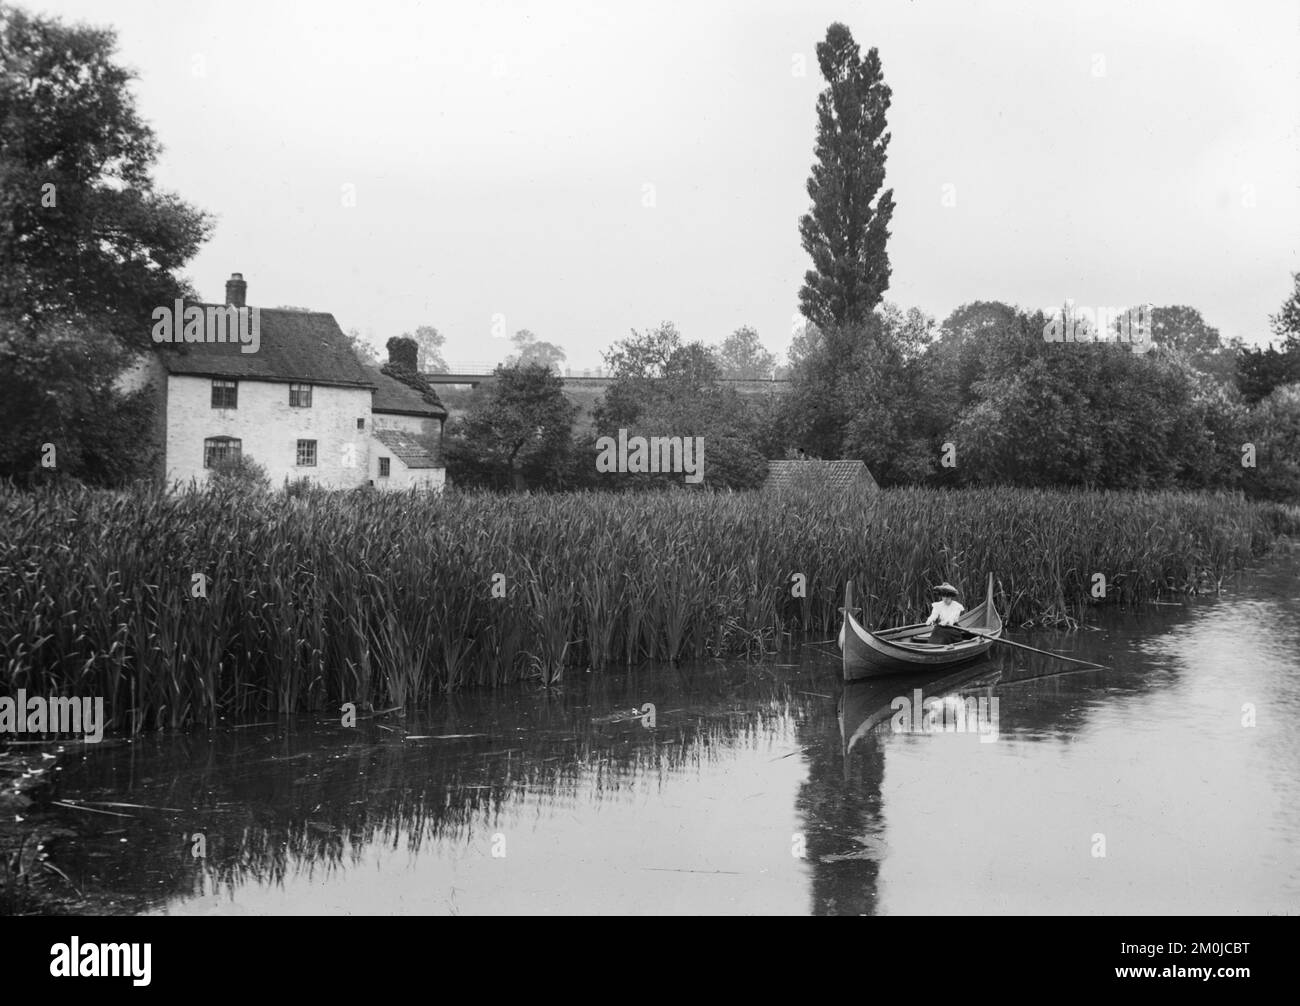 Fine 19th ° secolo in bianco e nero fotografia inglese che mostra una donna in una barca a remi, su un fiume, oltre ad alcune grandi precipite con una casa o cottage nelle vicinanze. Foto Stock